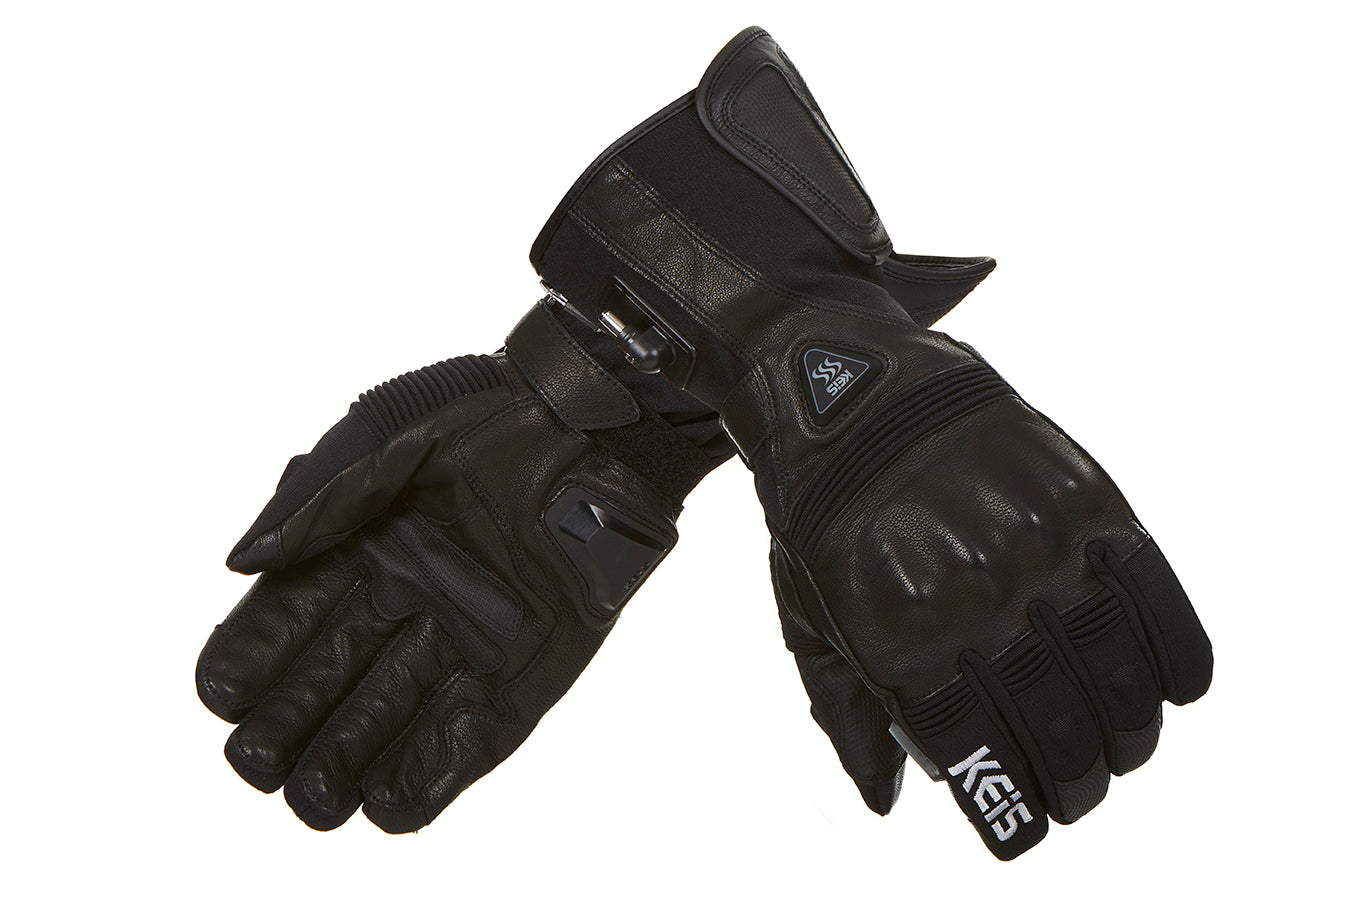 Keis heated motorcycle gloves G601 main